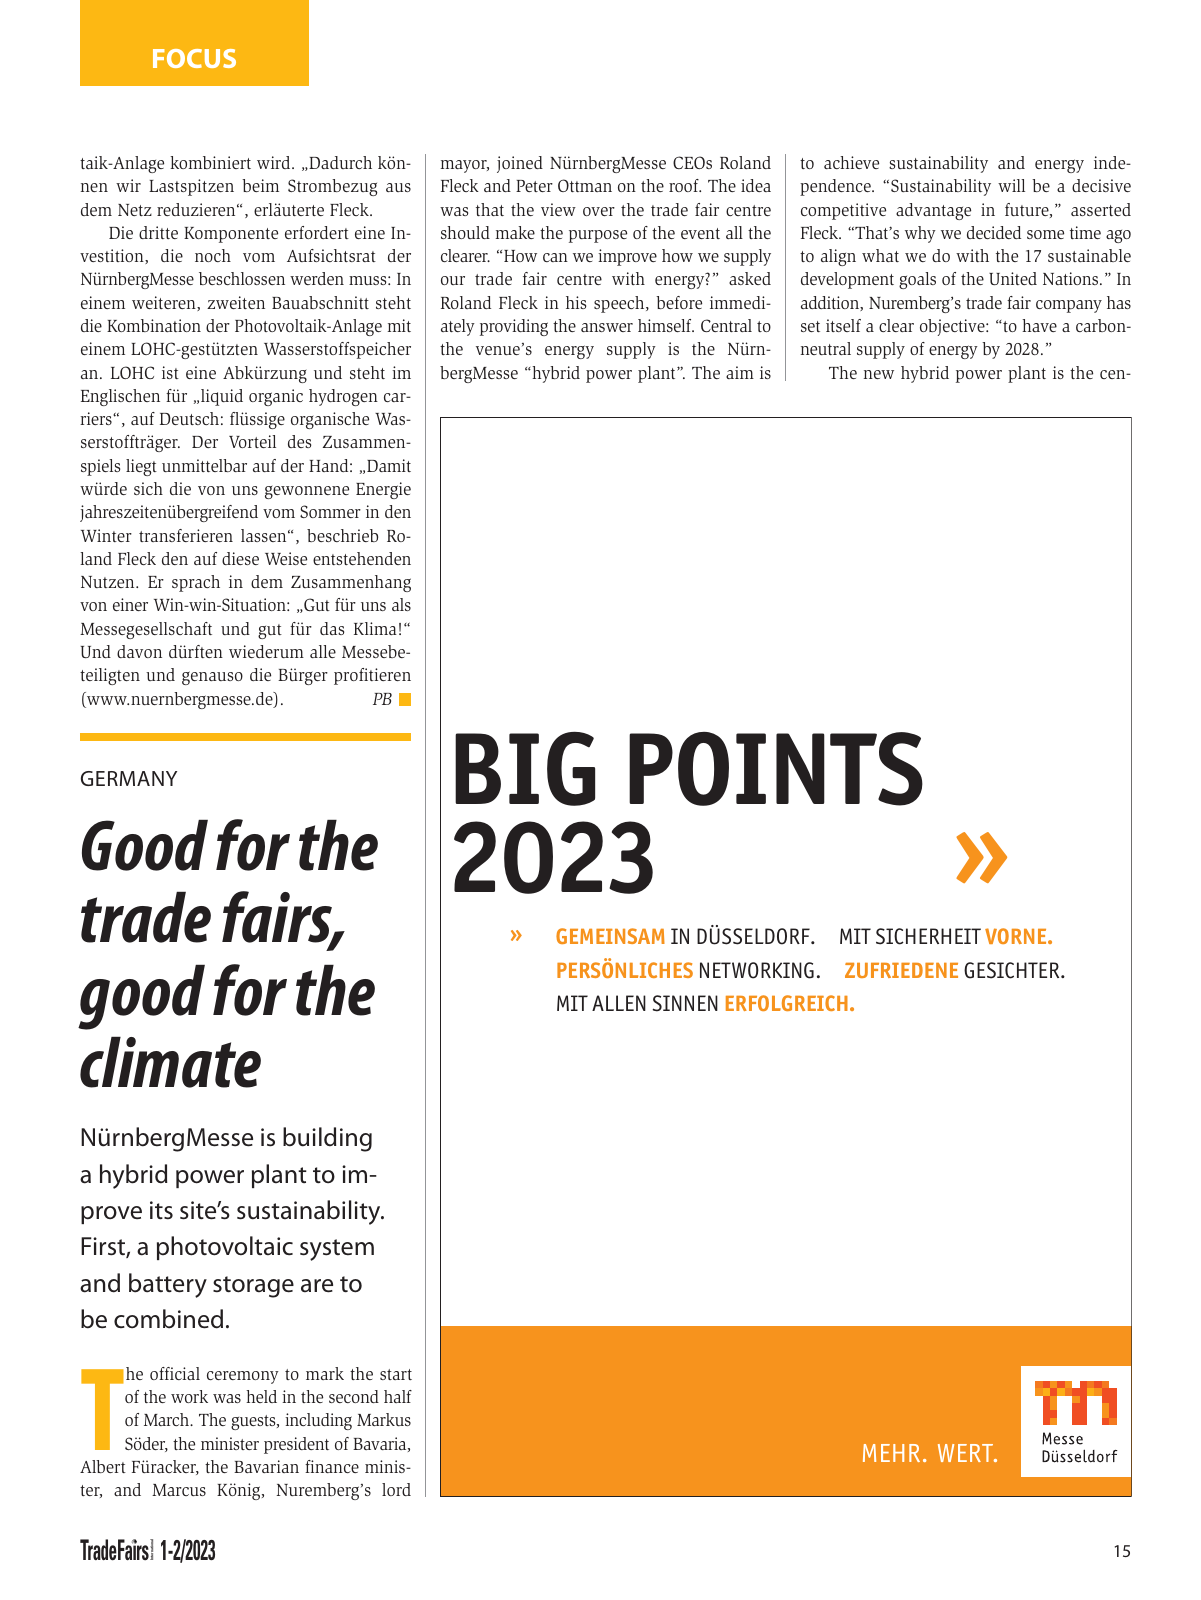 Vorschau TFI Trade-Fairs-International 01/2023 Seite 15